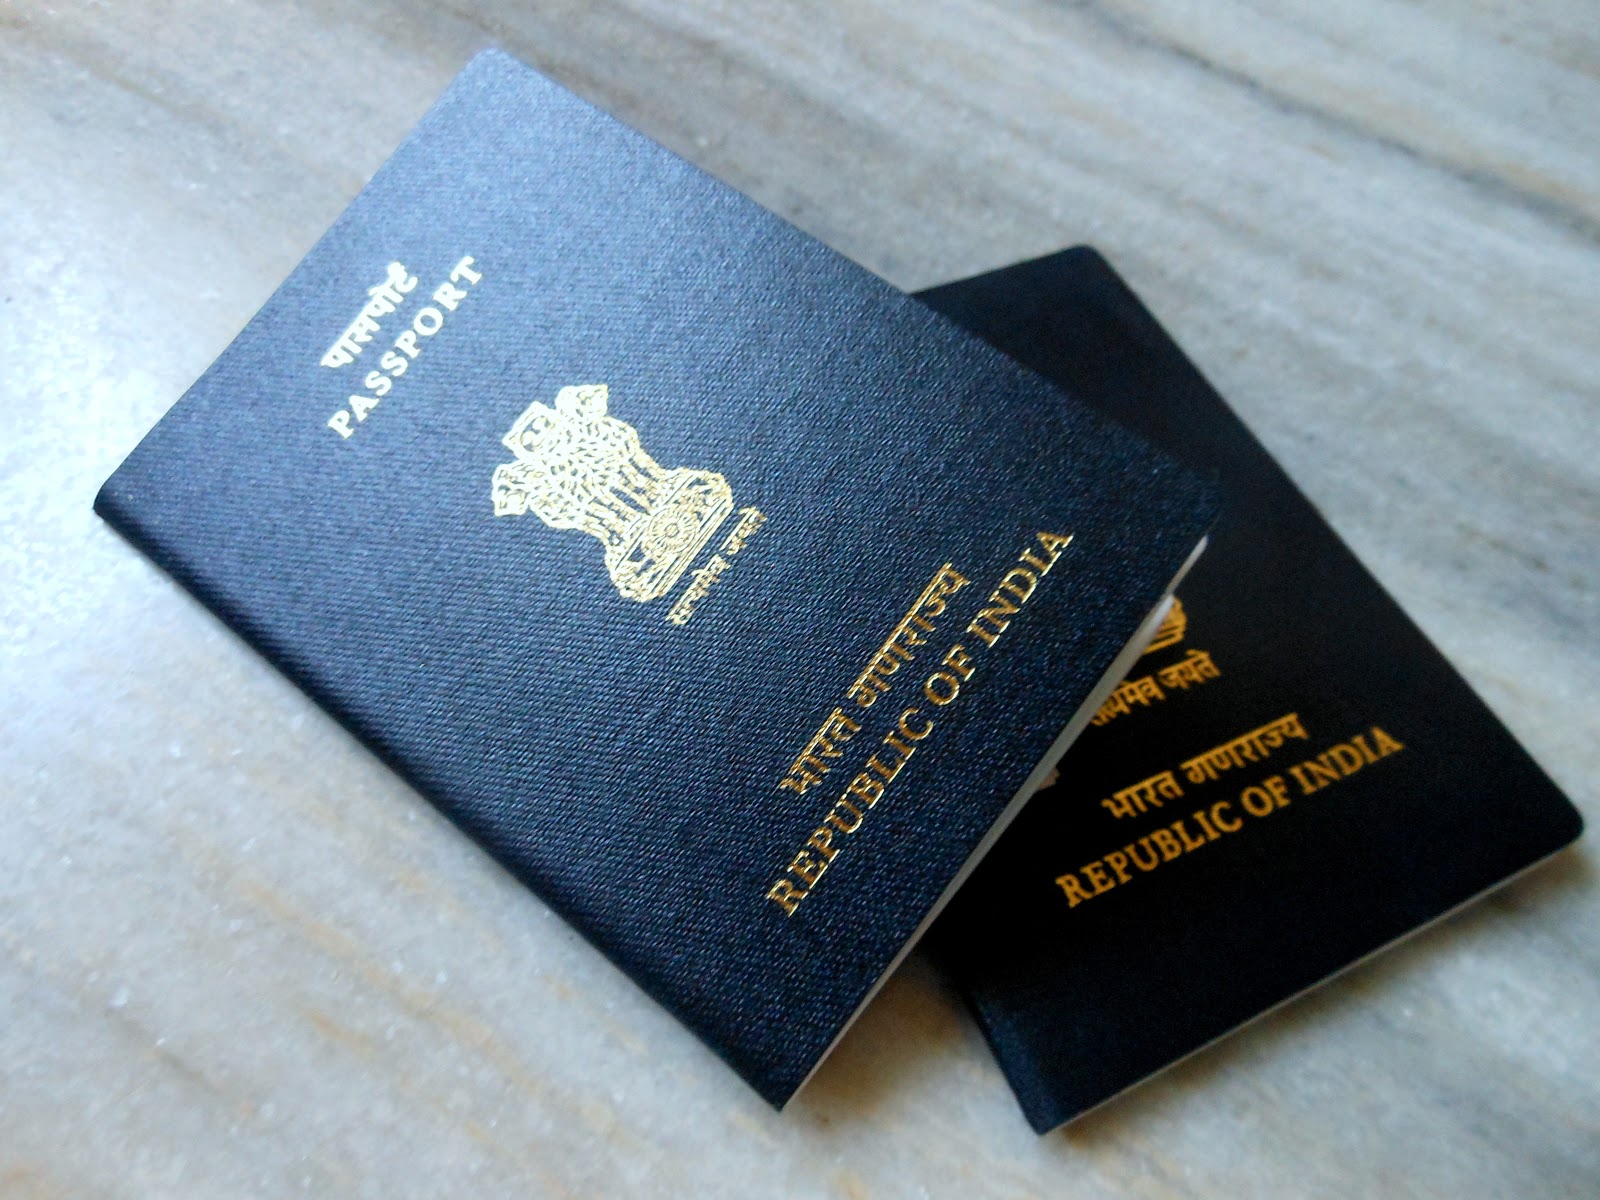 Passport renewal reissue guide